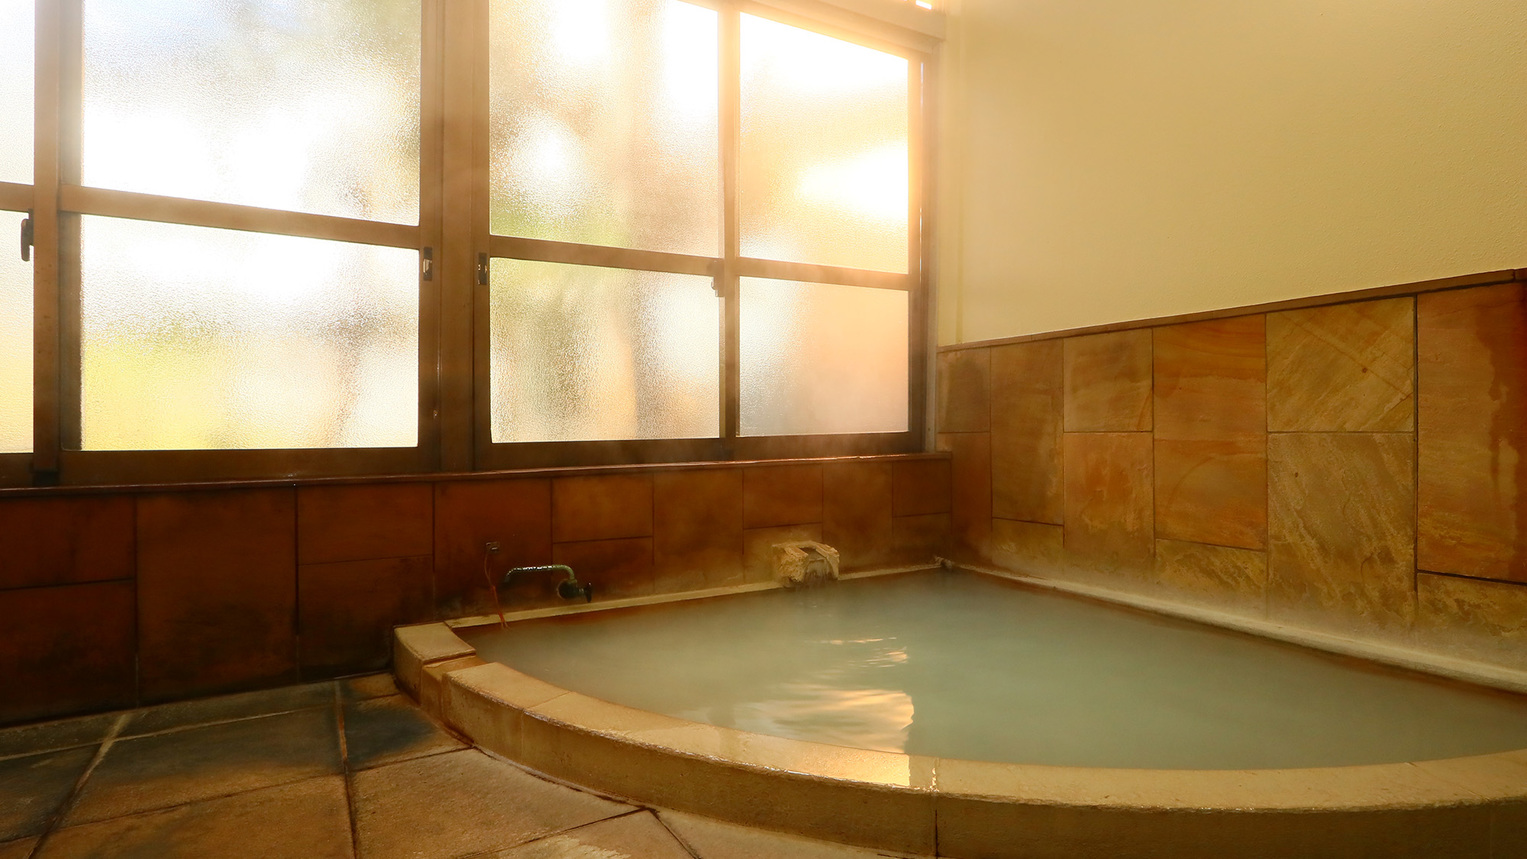 風呂大涌谷のにごり湯硫黄温泉は疲労回復や美肌づくりに効果的で保温効果も抜群です。